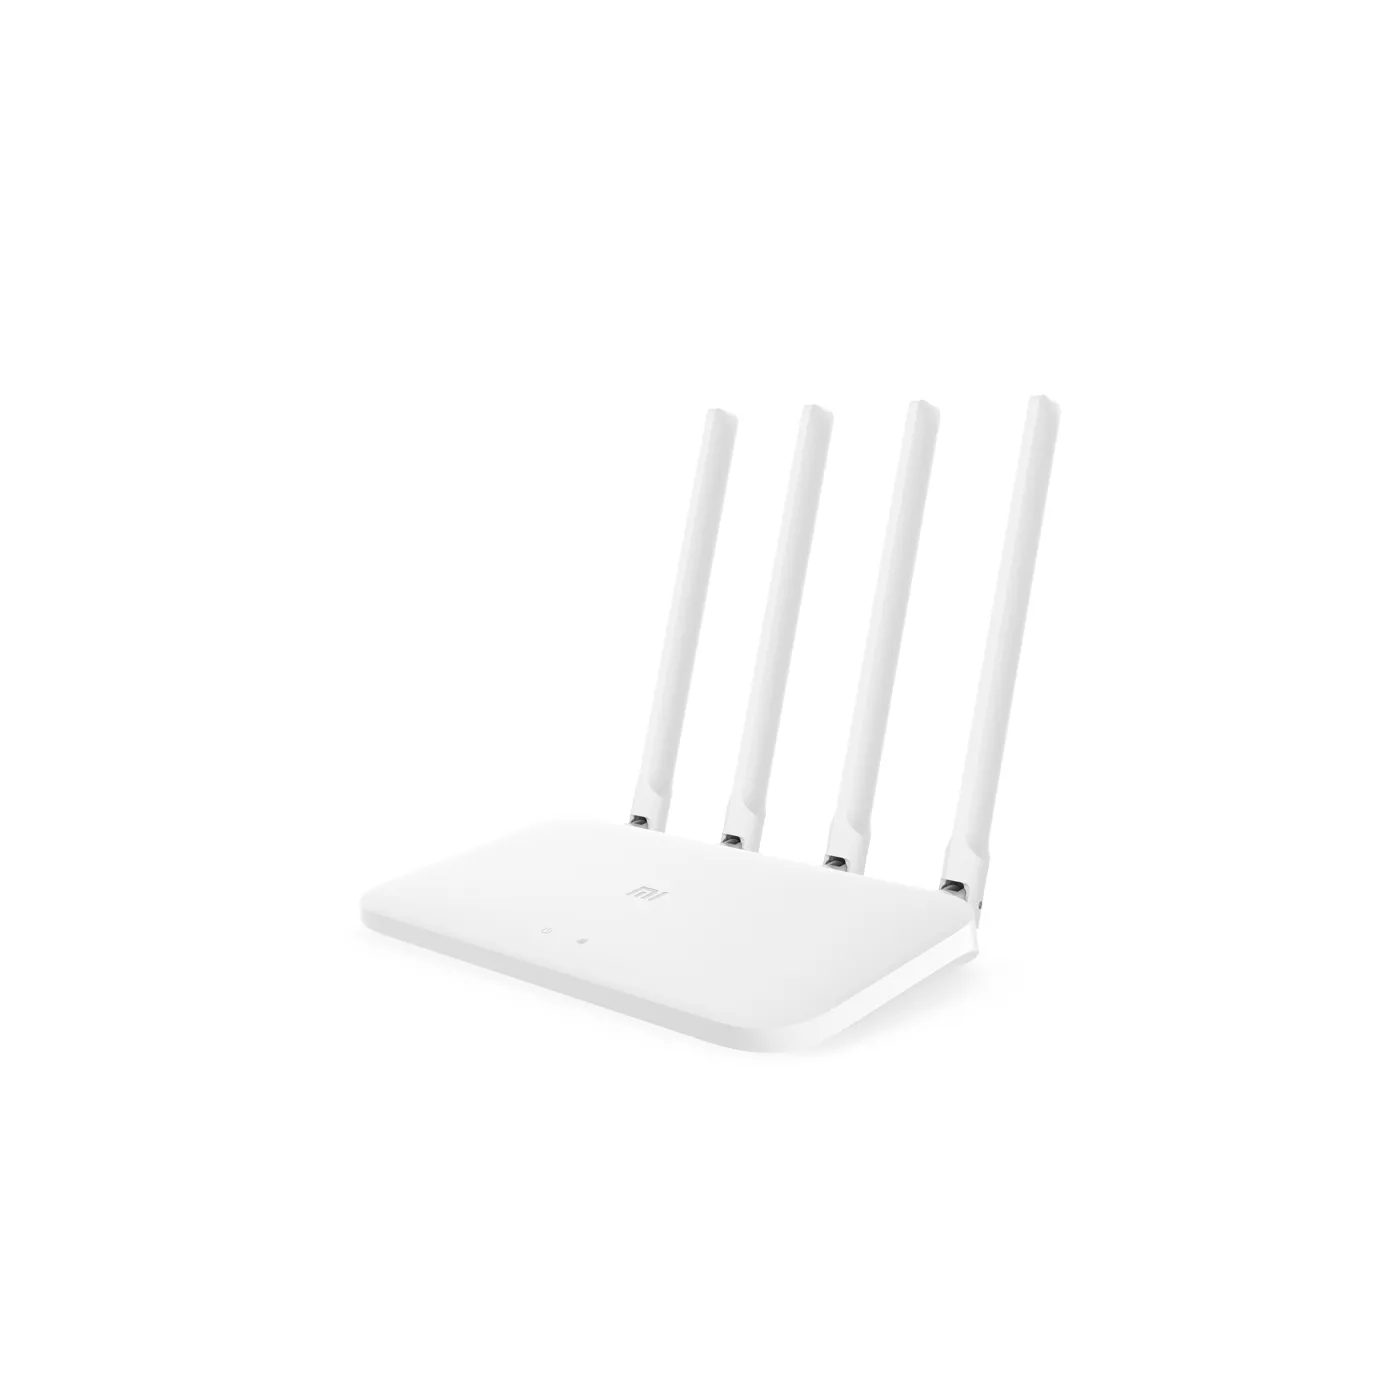 Router XIAOMI WiFi 4 Antenas 1200Mbps